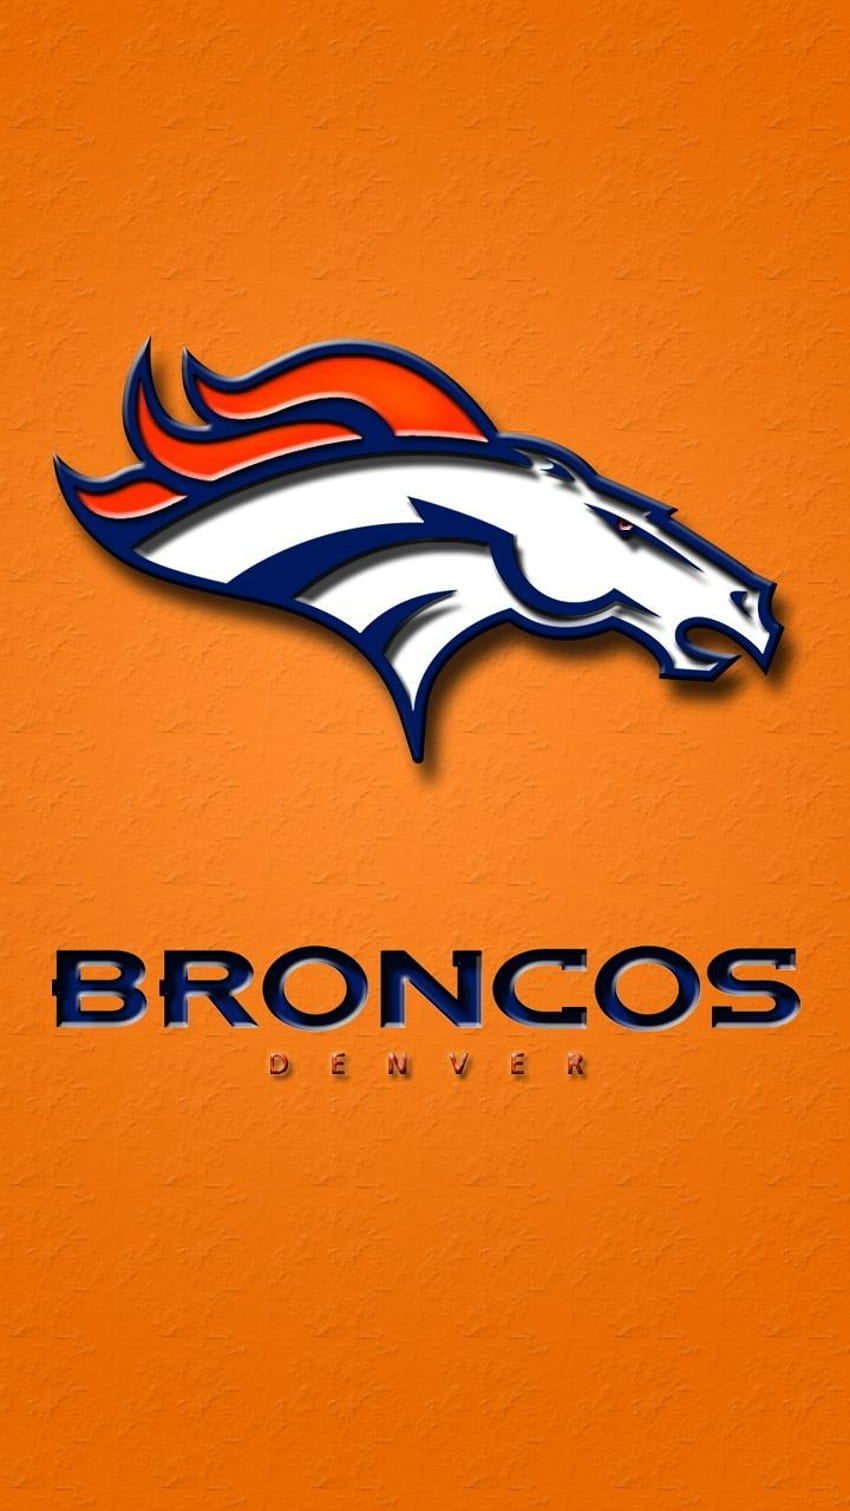 Broncos de Denver les plus populaires pour Android FULL 1920 × 1080 pour PC. Broncos de Denver , Broncos , Jeu des Broncos de Denver, Nike Broncos de Denver Fond d'écran de téléphone HD